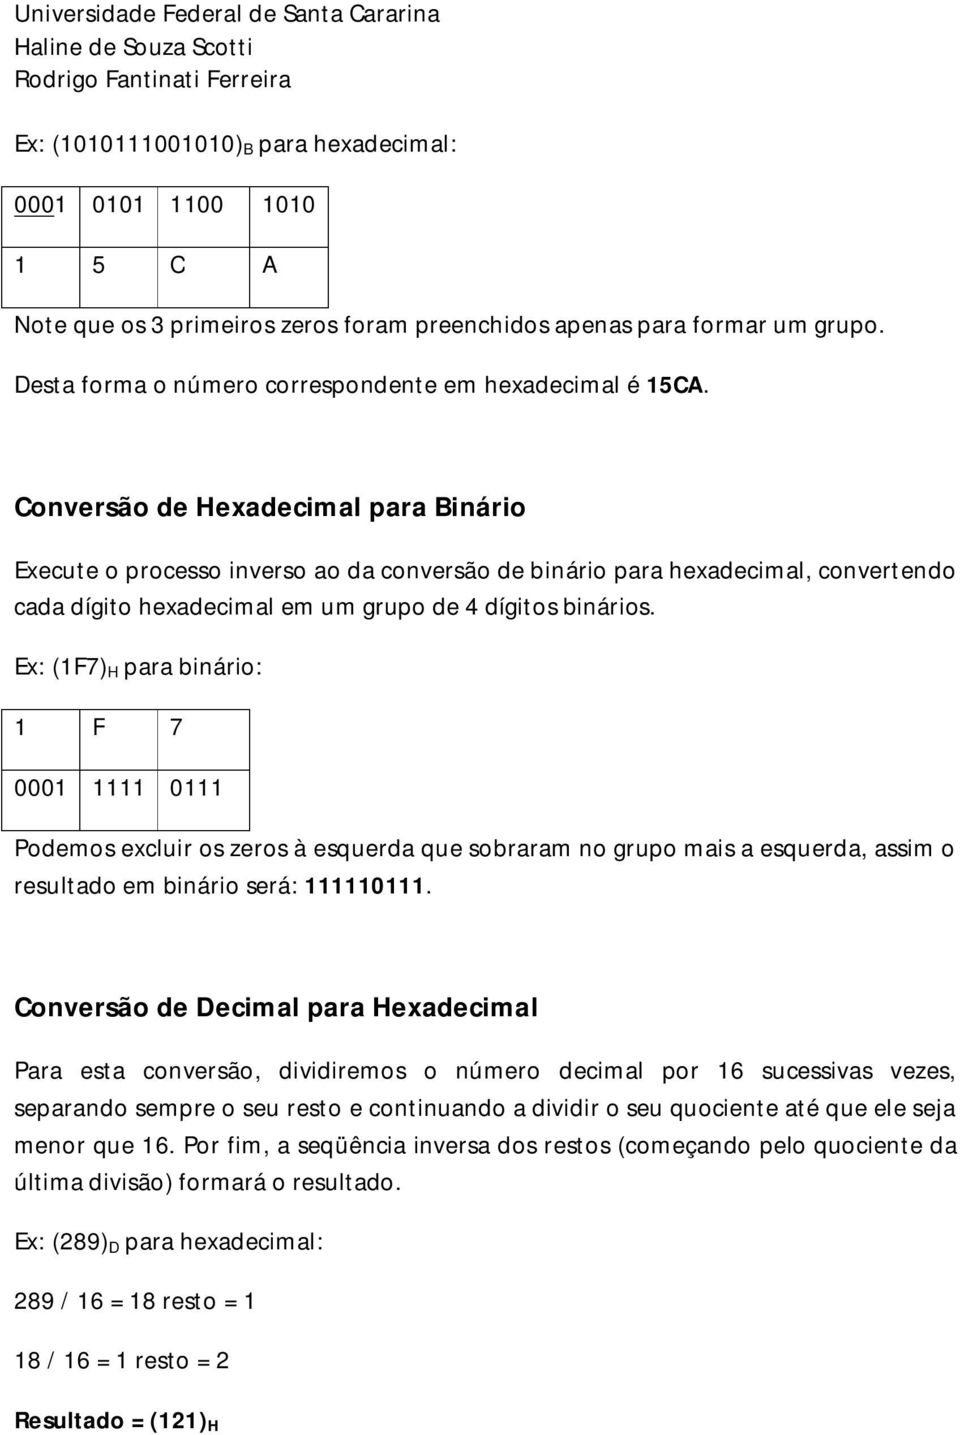 Conversão de Hexadecimal para Binário Execute o processo inverso ao da conversão de binário para hexadecimal, convertendo cada dígito hexadecimal em um grupo de 4 dígitos binários.